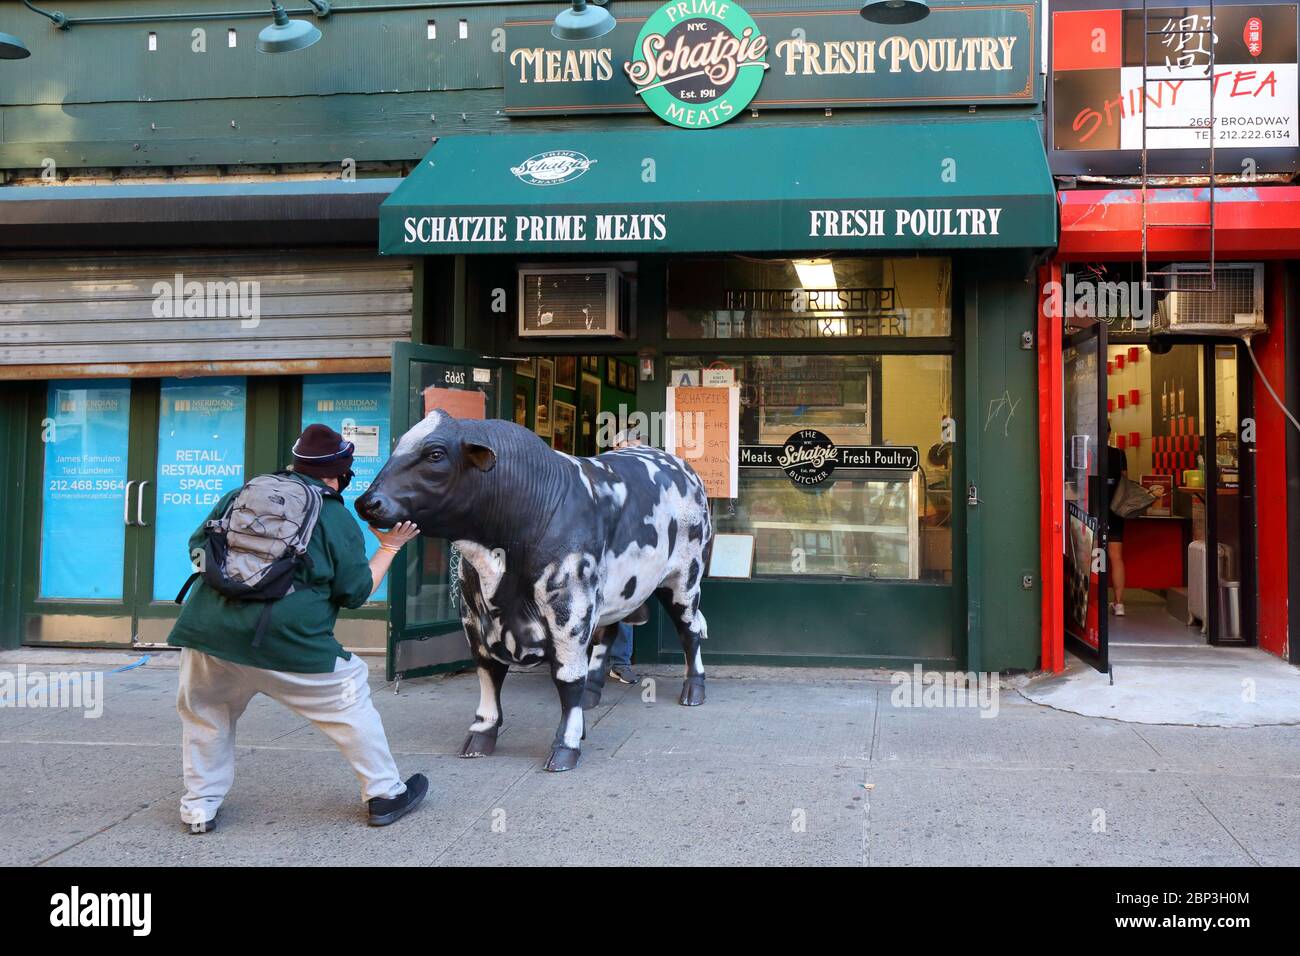 Una persona si rangles un prop dirigersi indietro in Schatzie prime Meats, 2665 Broadway nel lato superiore ovest di Manhattan, New York. Foto Stock